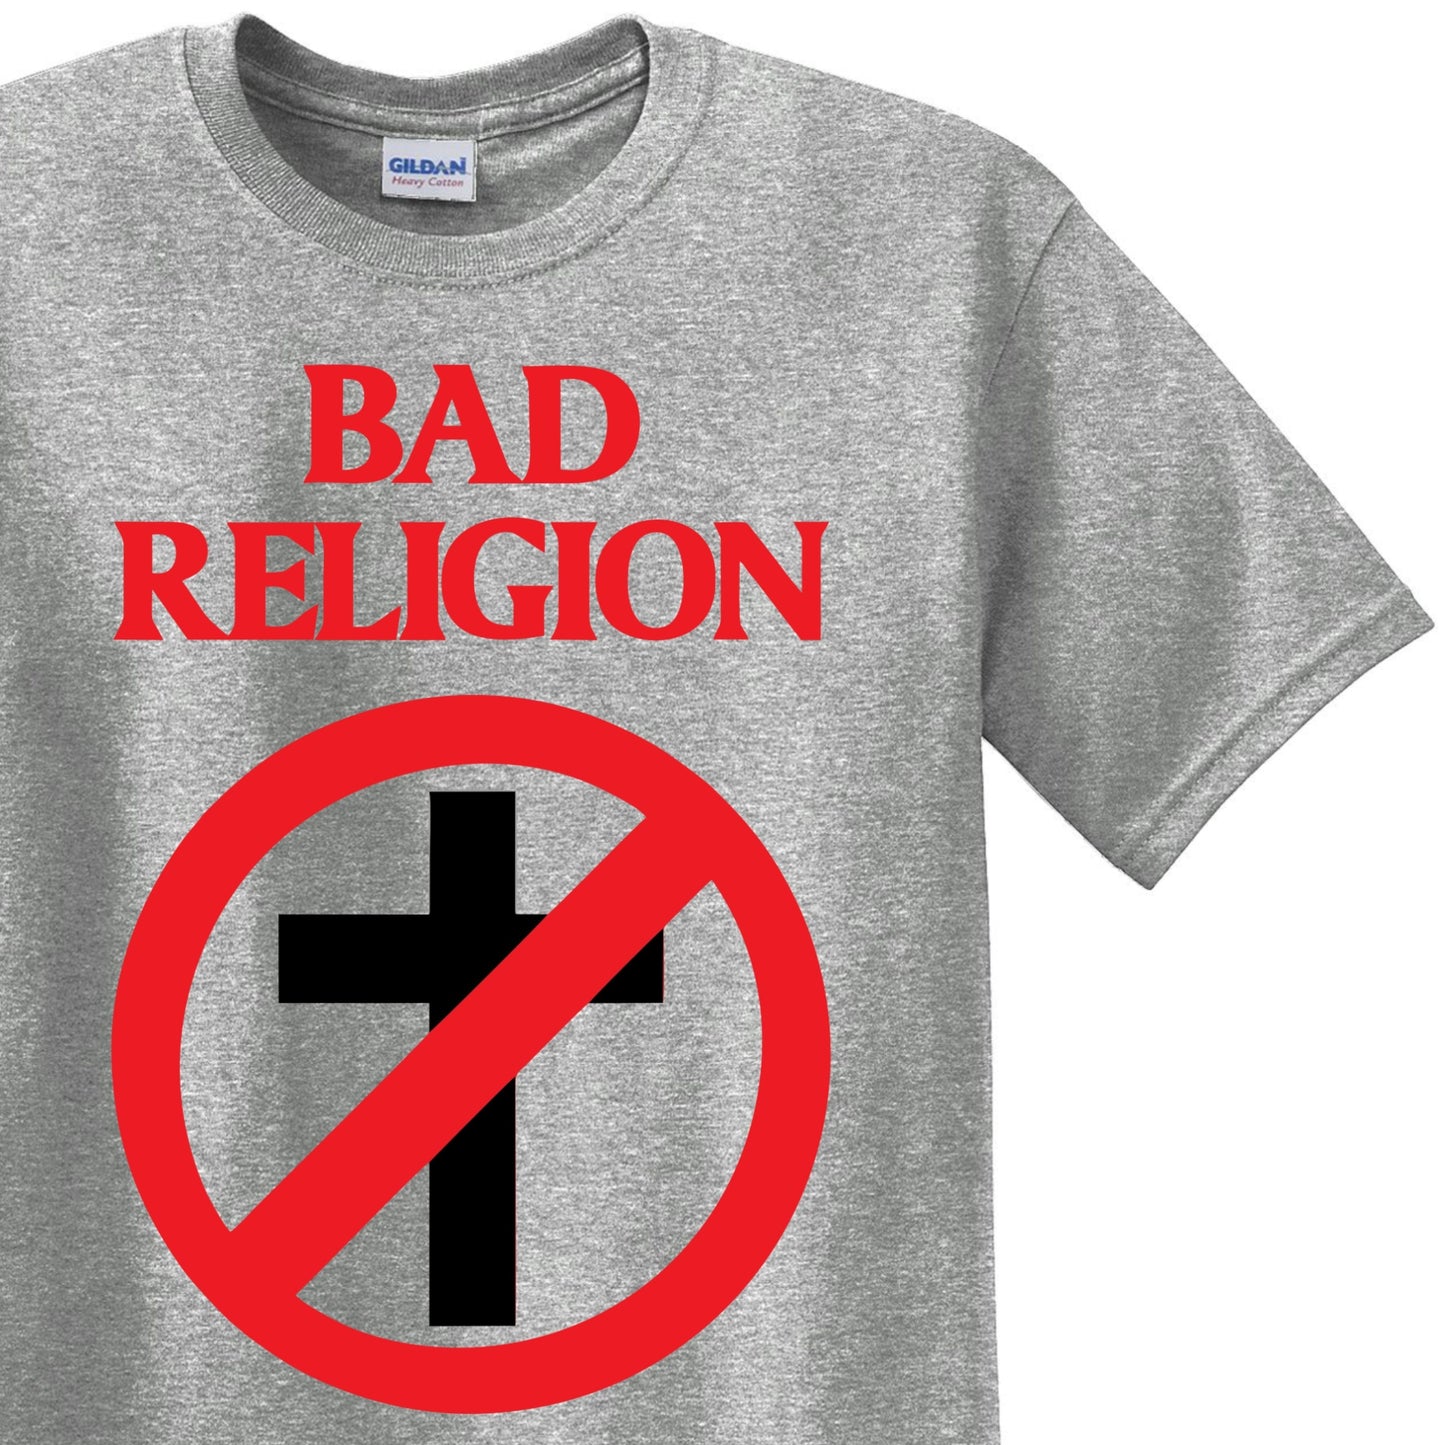 Radical Band  Men's Shirts - Bad Religion (Gray) - MYSTYLEMYCLOTHING